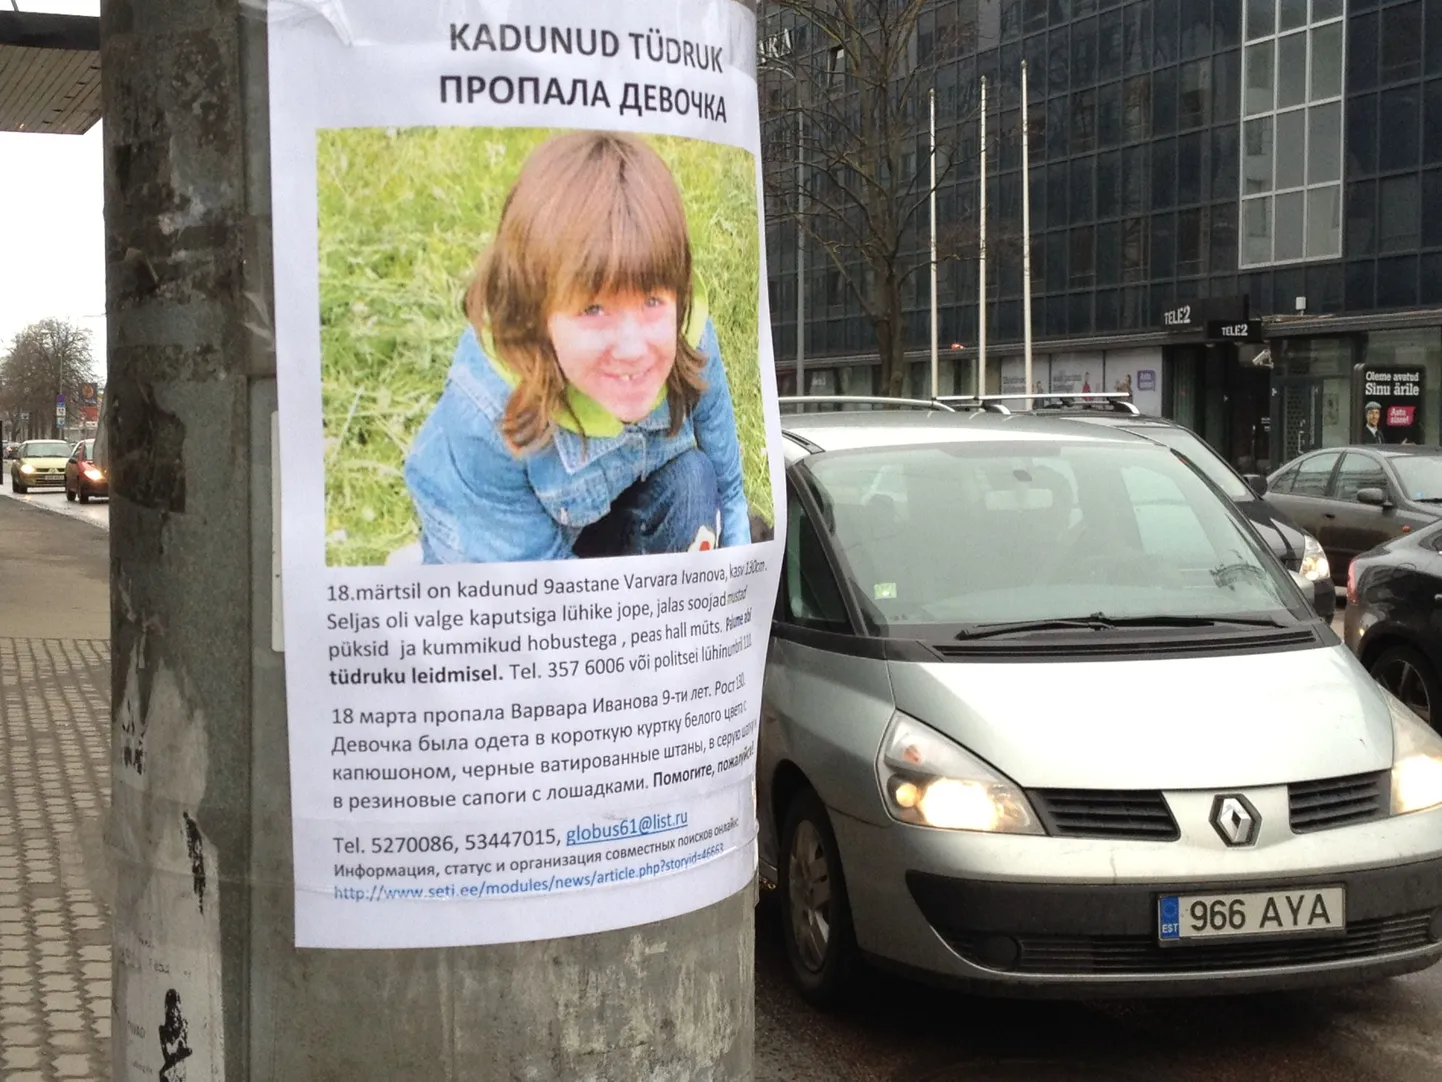 Объявление о поисках пропавшей девочки в центре Таллинна